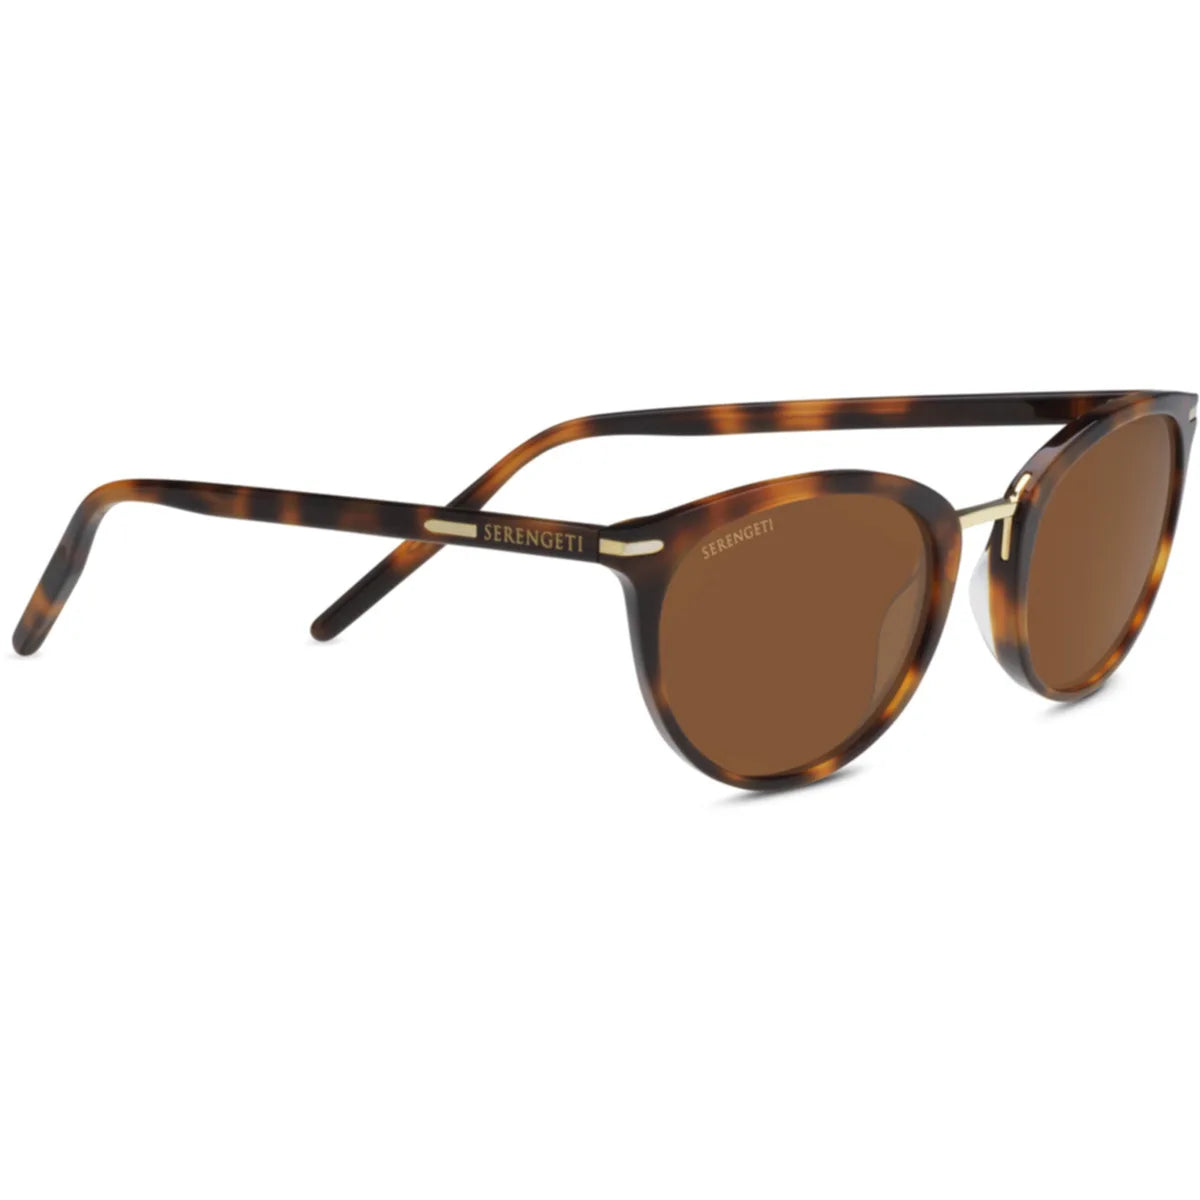 Serengeti Elyna Sunglasses Havana Shiny / Mineral Polarized Drivers Cat 2 to 3